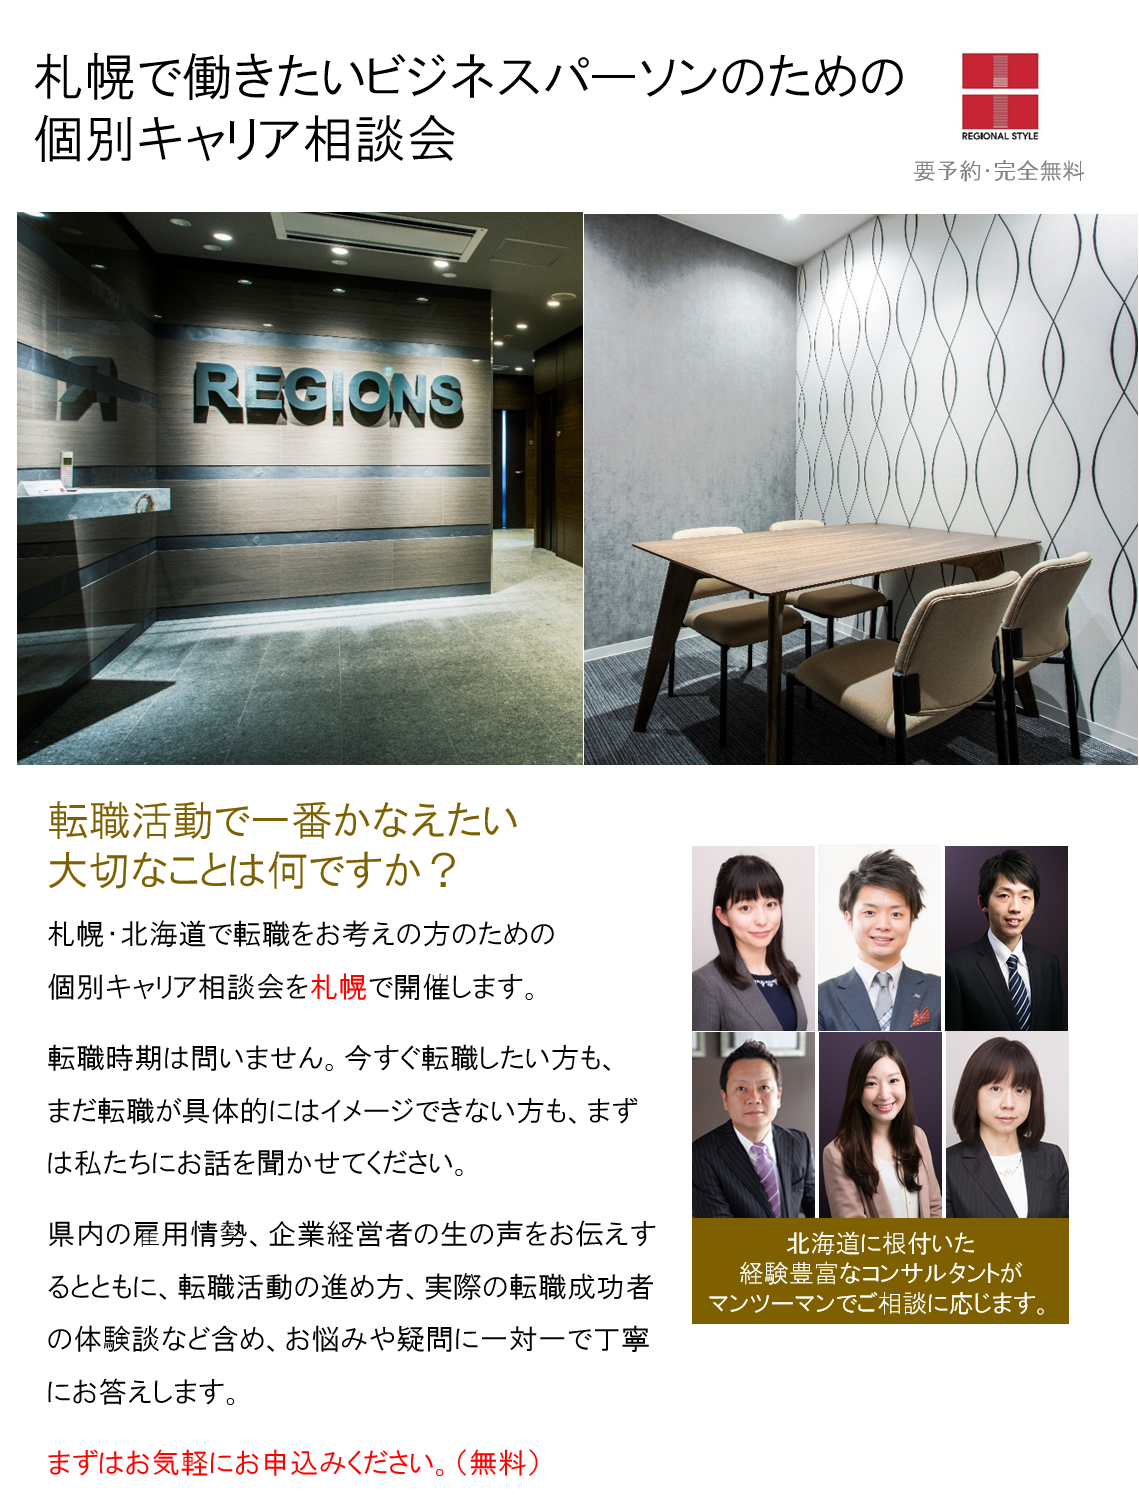 http://www.regional.co.jp/career_mt/062223%E6%9C%AD%E5%B9%8C.png